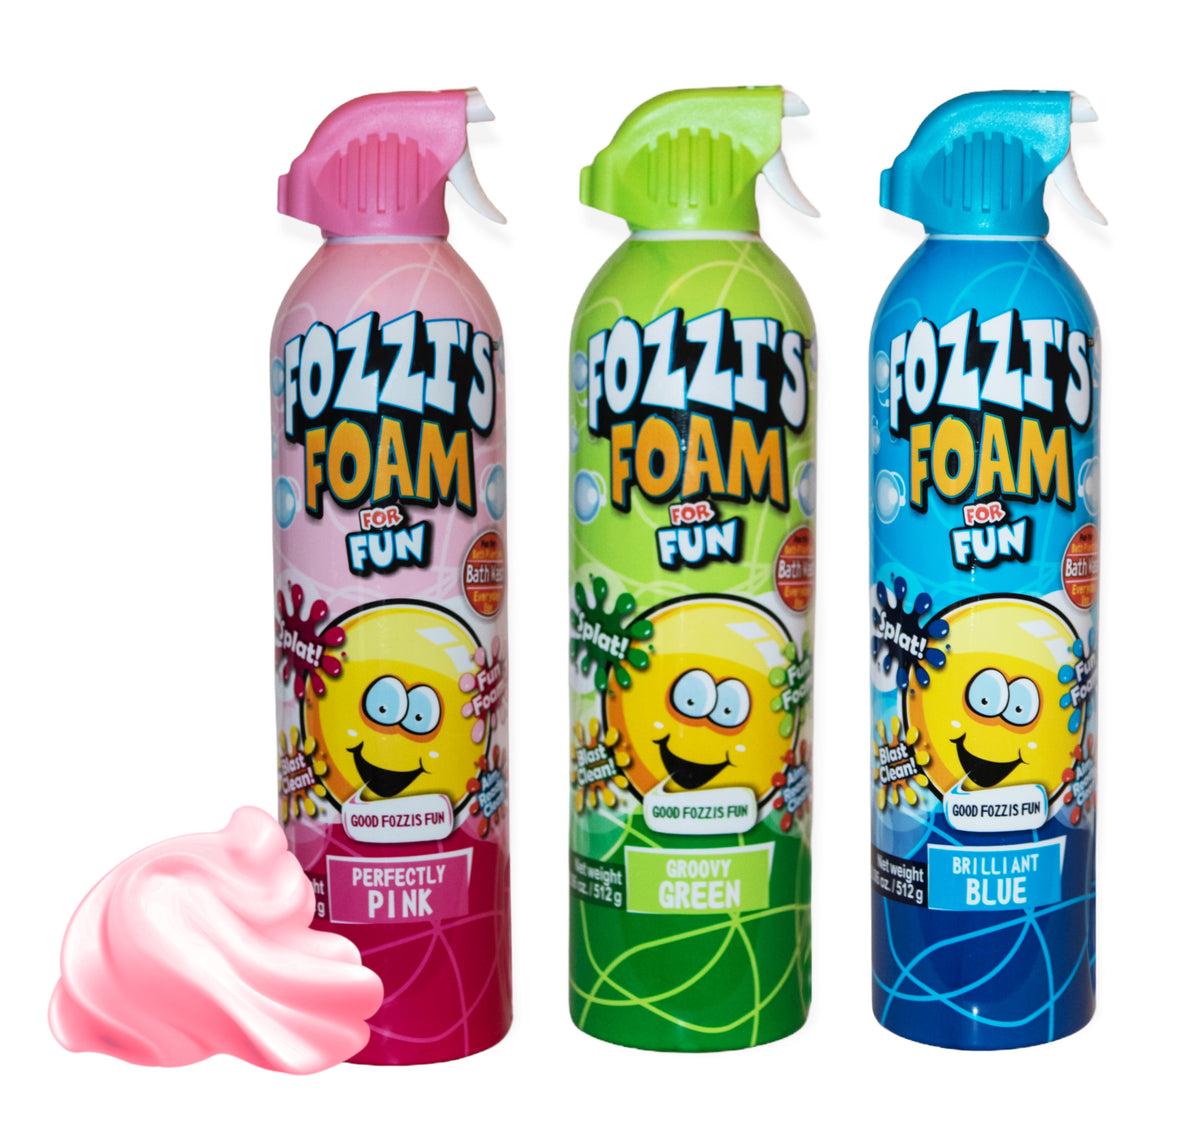 Fozzi's Bath Foam Spray for Kids 11.04 oz, in Blue, Green or Pink colo –  Fozzi's Fun